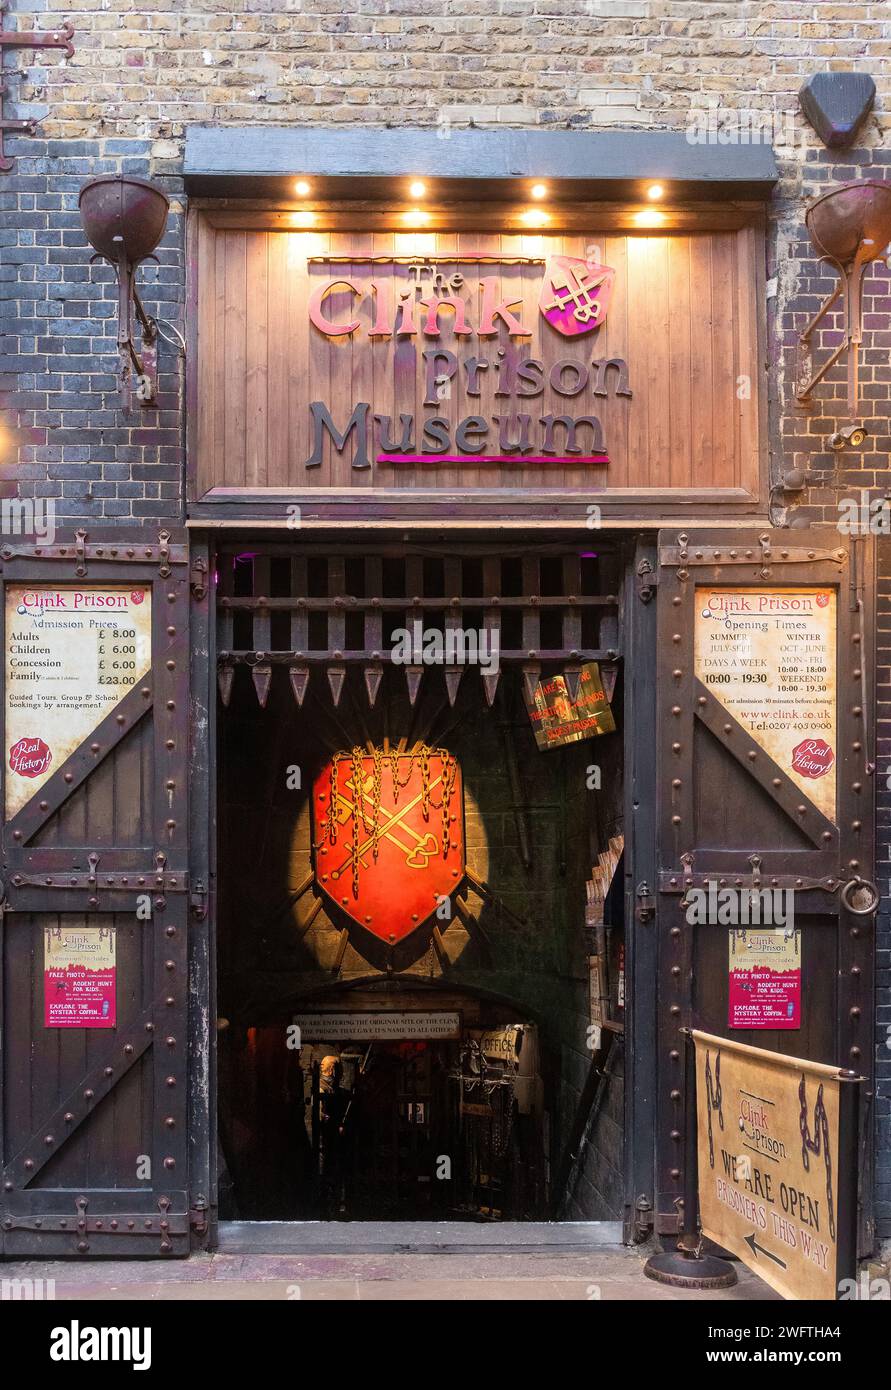 Das Clink Prison Museum, eine Touristenattraktion in London, England, Großbritannien. Londoner Sehenswürdigkeiten Stockfoto